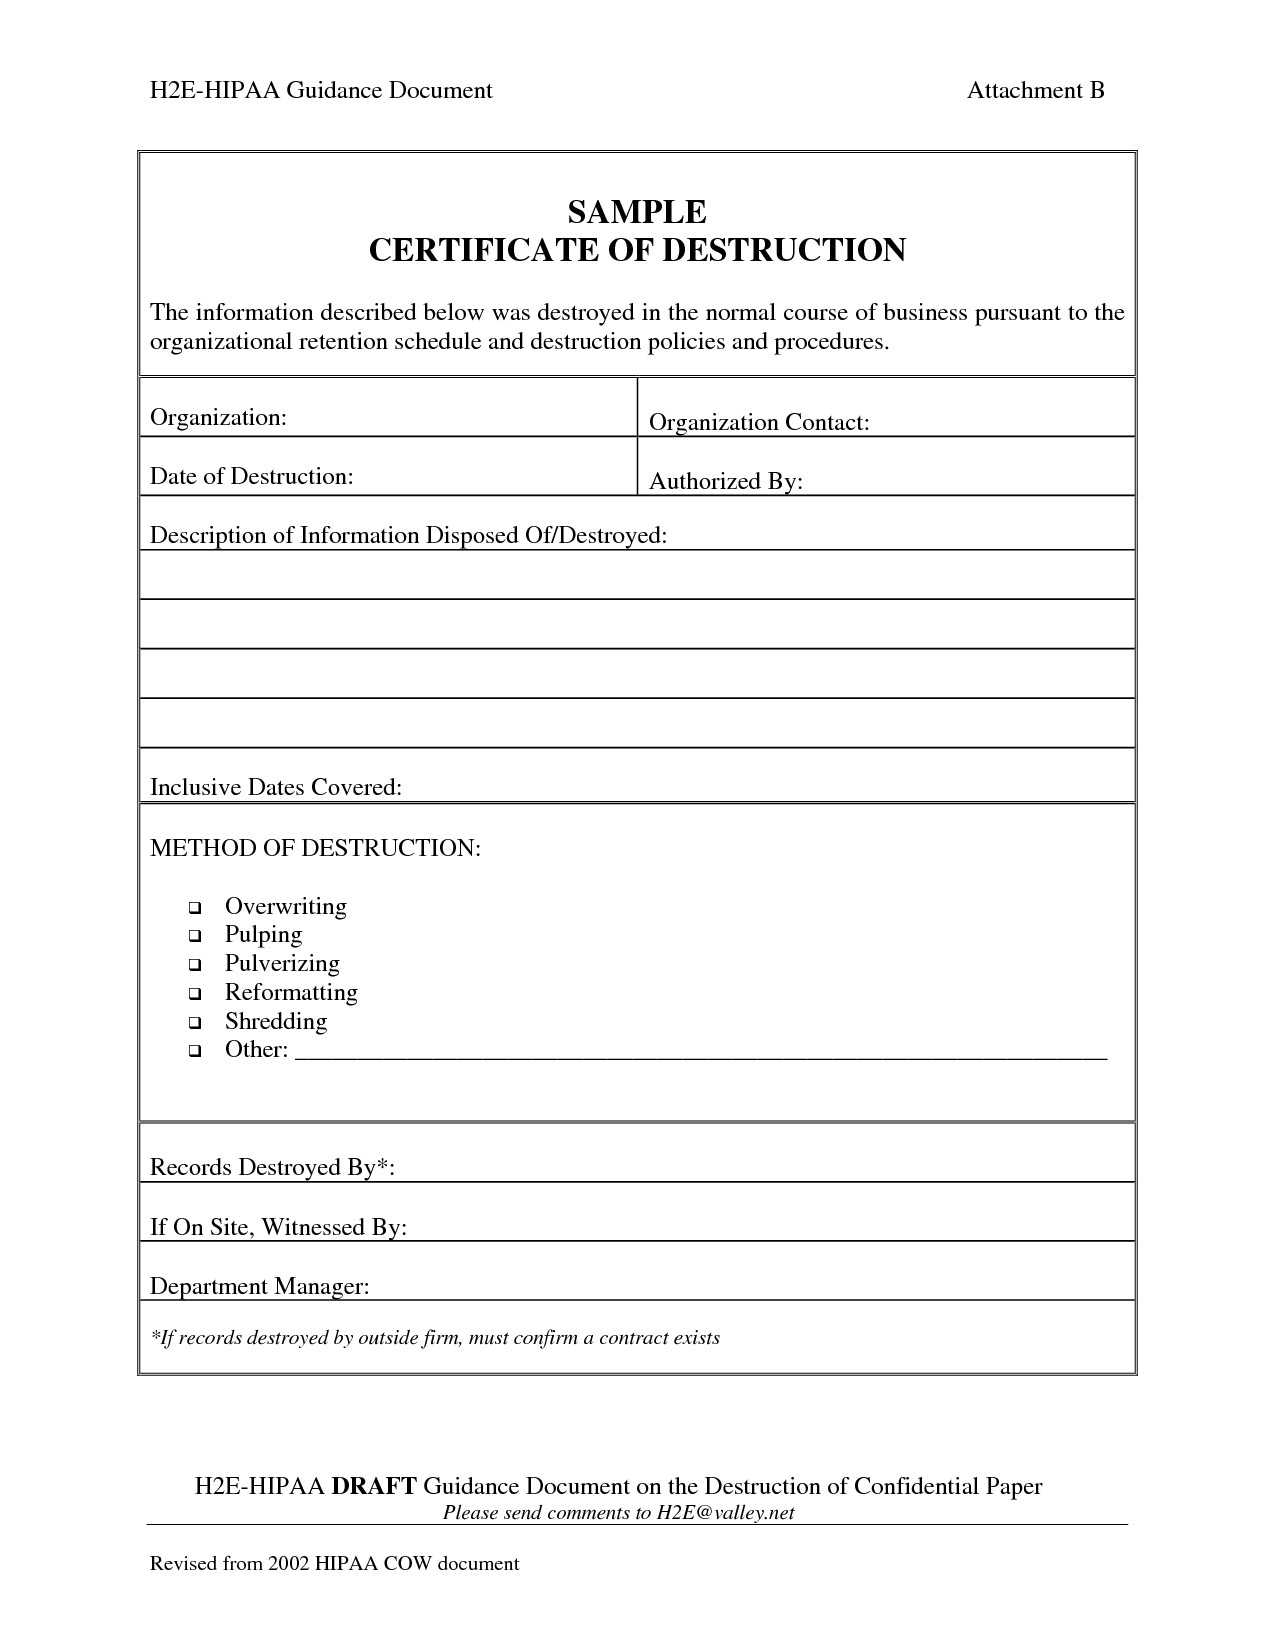 001 Template Ideas Certificate Of Destruction Frightening With Regard To Certificate Of Destruction Template